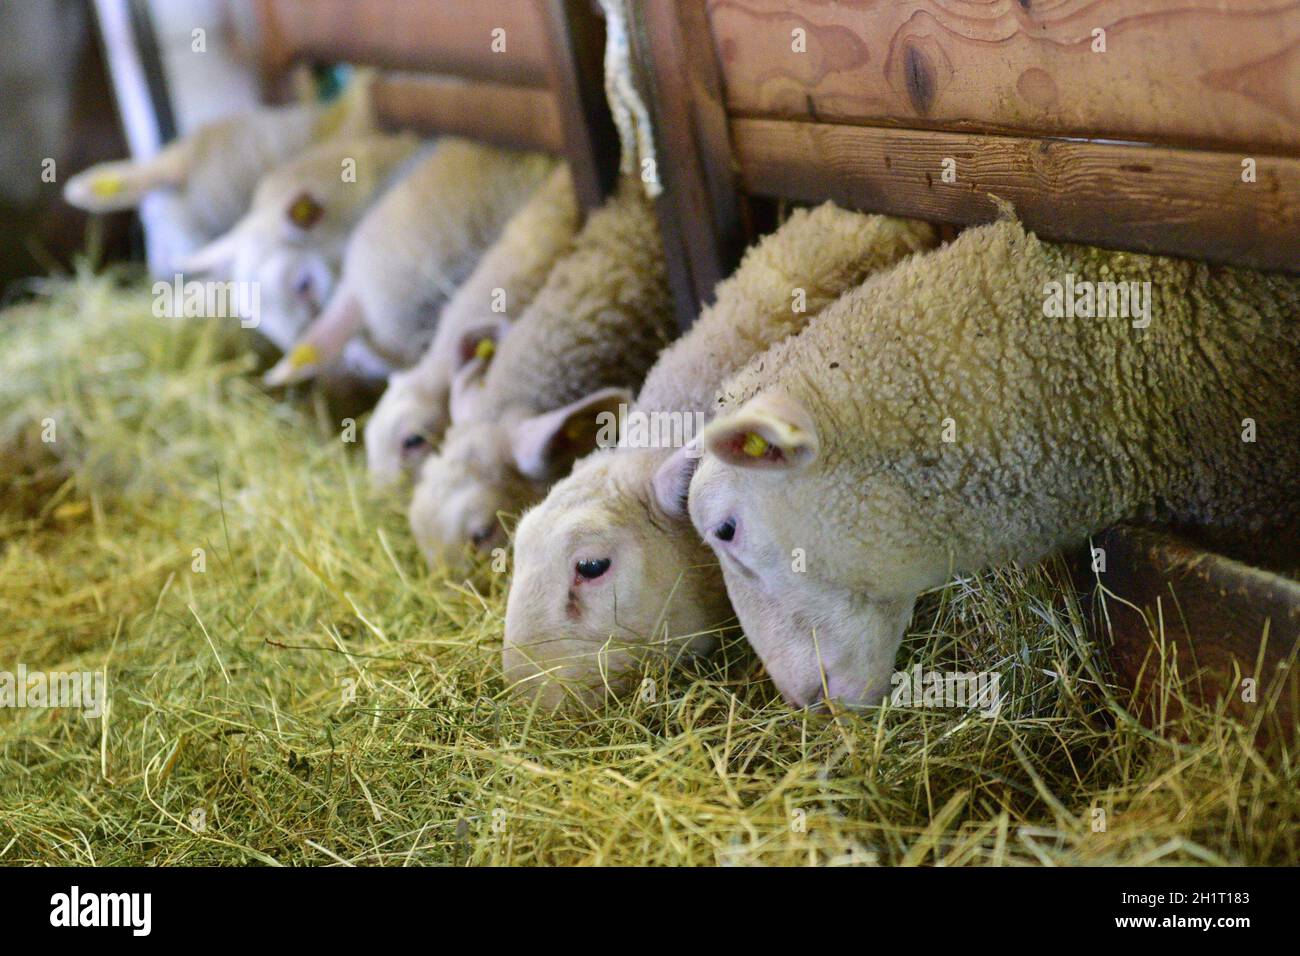 Schafe in einem Stall eines Bauernhauses beim Fressen, Oberösterreich, Österreich, Europa - Sheeps in a barn of a farmhouse while eating, Upper Austri Stock Photo